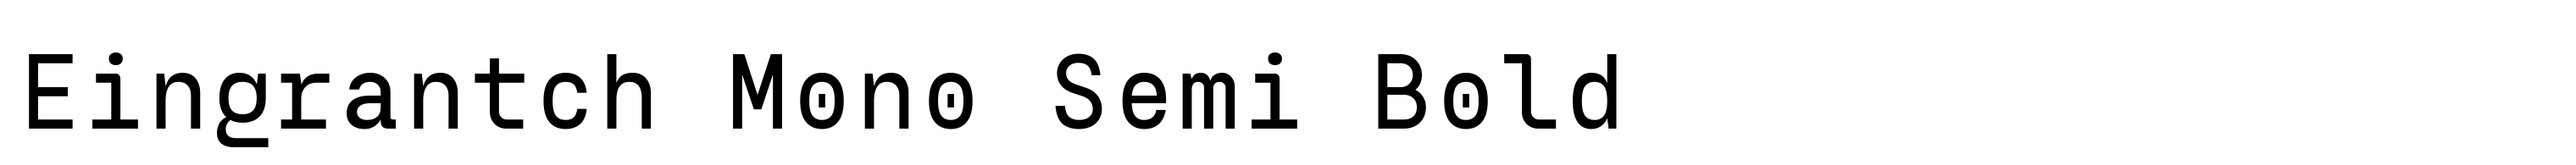 Eingrantch Mono Semi Bold